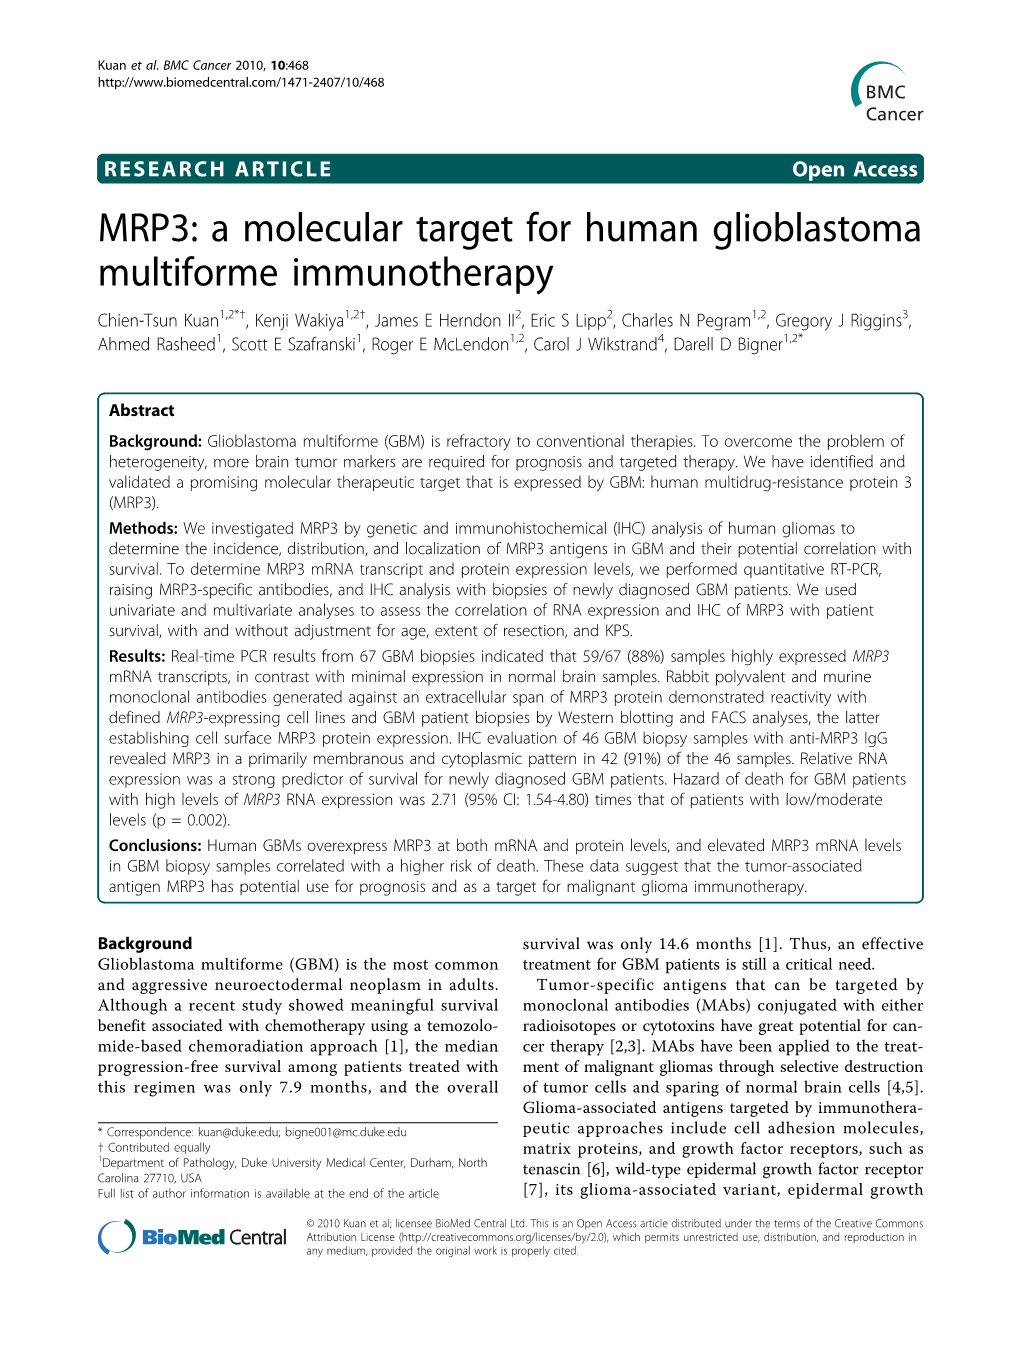 A Molecular Target for Human Glioblastoma